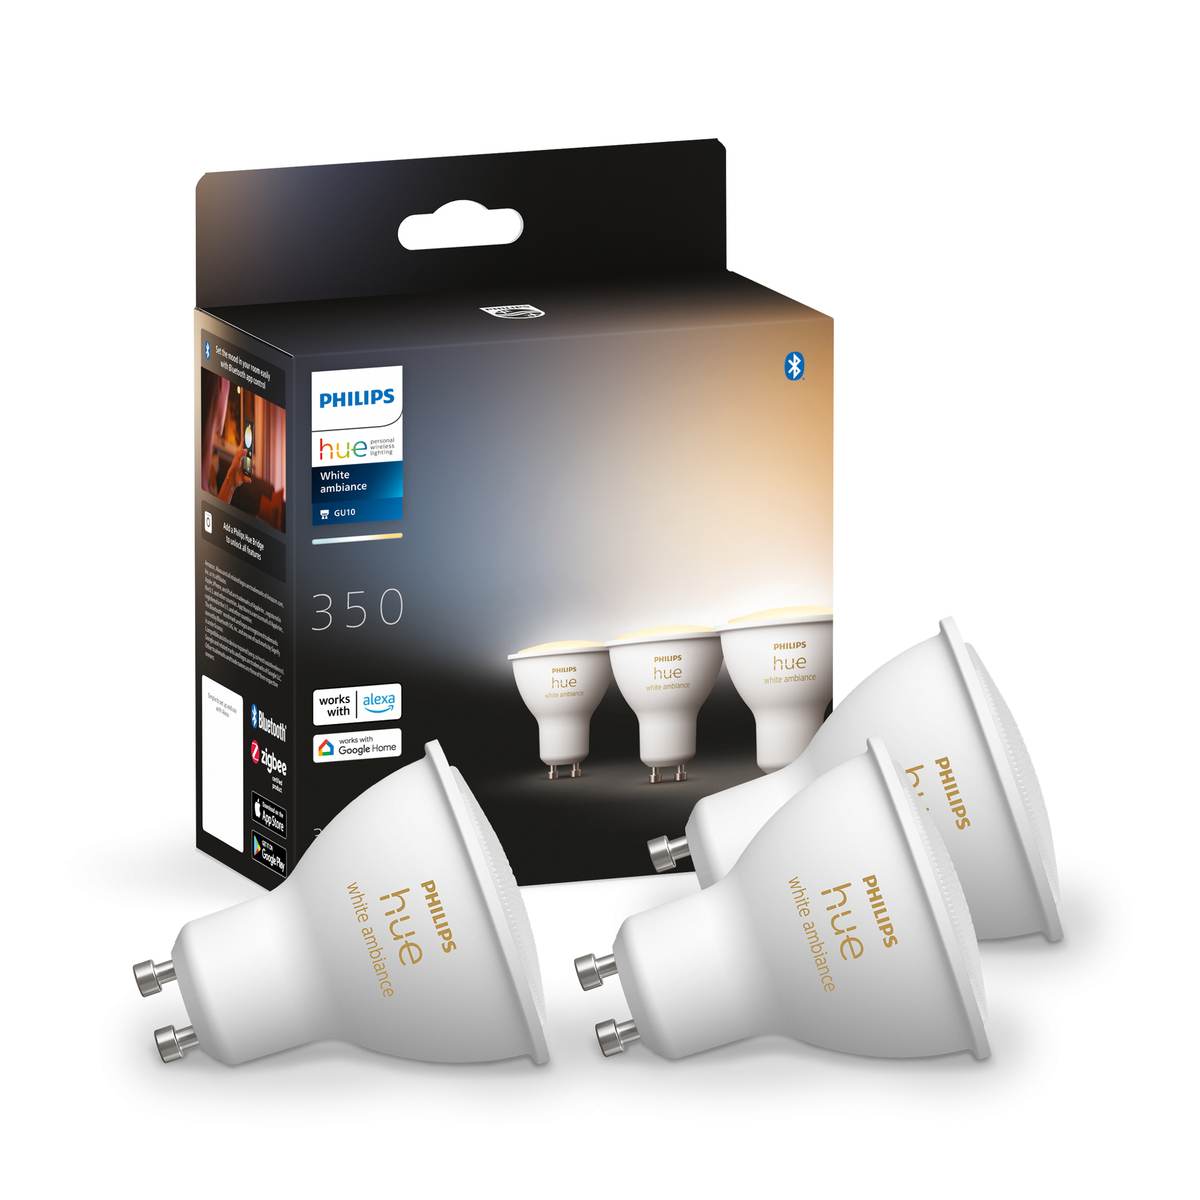 dimmbar Philips LED GU10 Spot Home Ambiance App GU10 | 350lm White via Hue | Leuchtmittel | Smart | Licht Dein | your-smarthome White Sprache Onlineshop oder Tunable Dreierpack